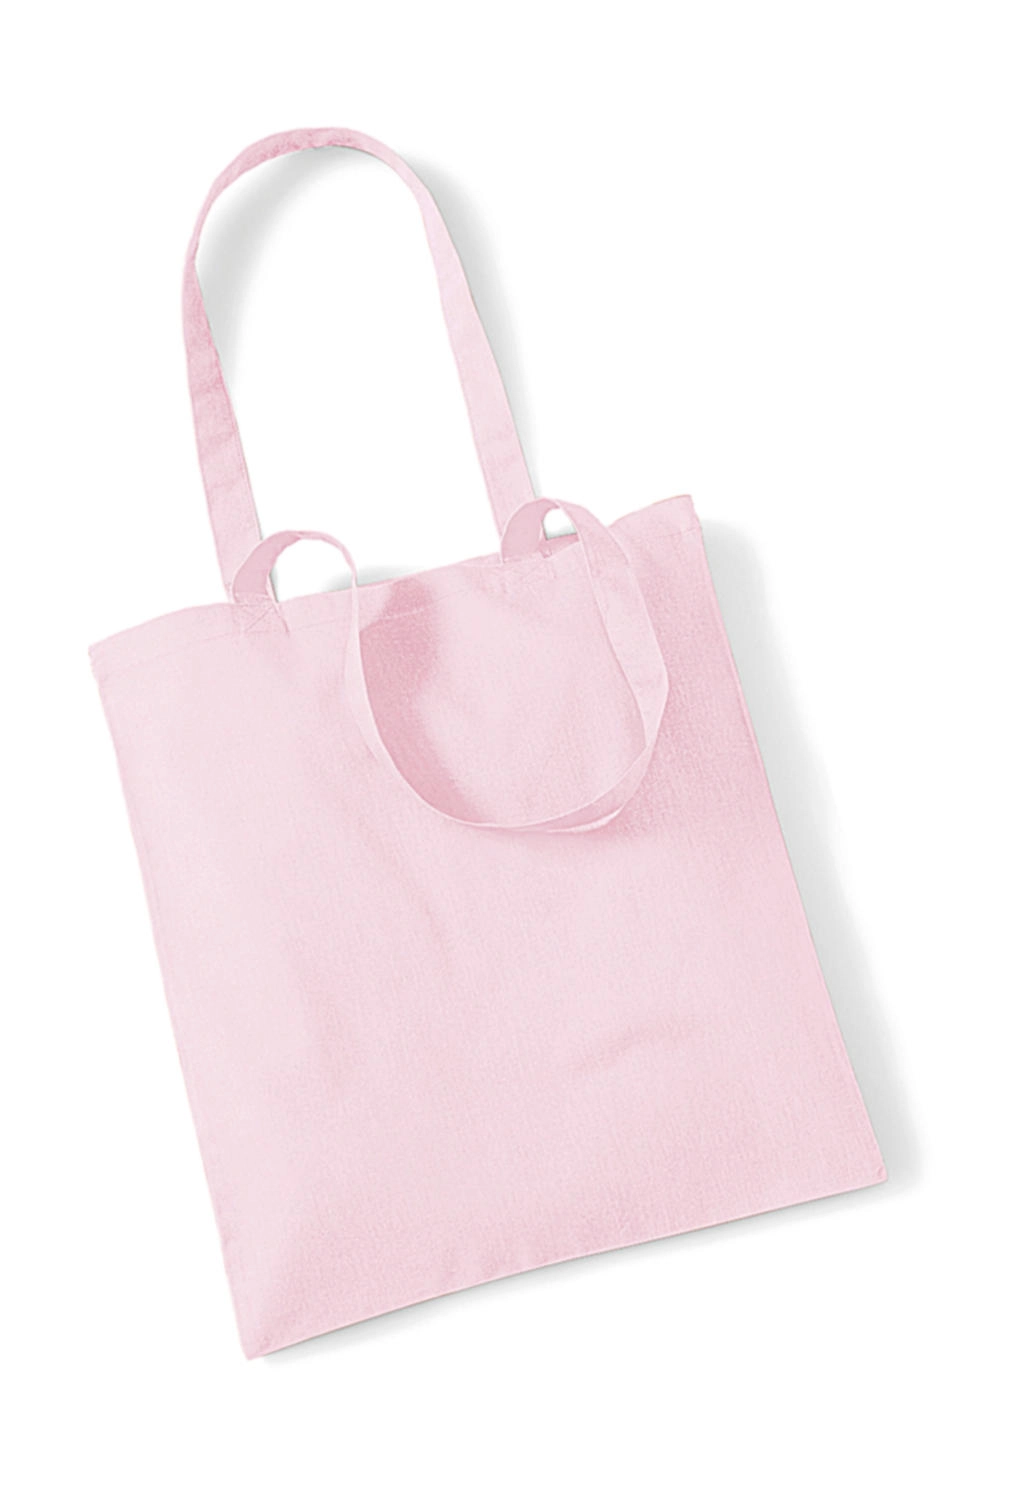 Bag for Life - Long Handles zum Besticken und Bedrucken in der Farbe Pastel Pink mit Ihren Logo, Schriftzug oder Motiv.